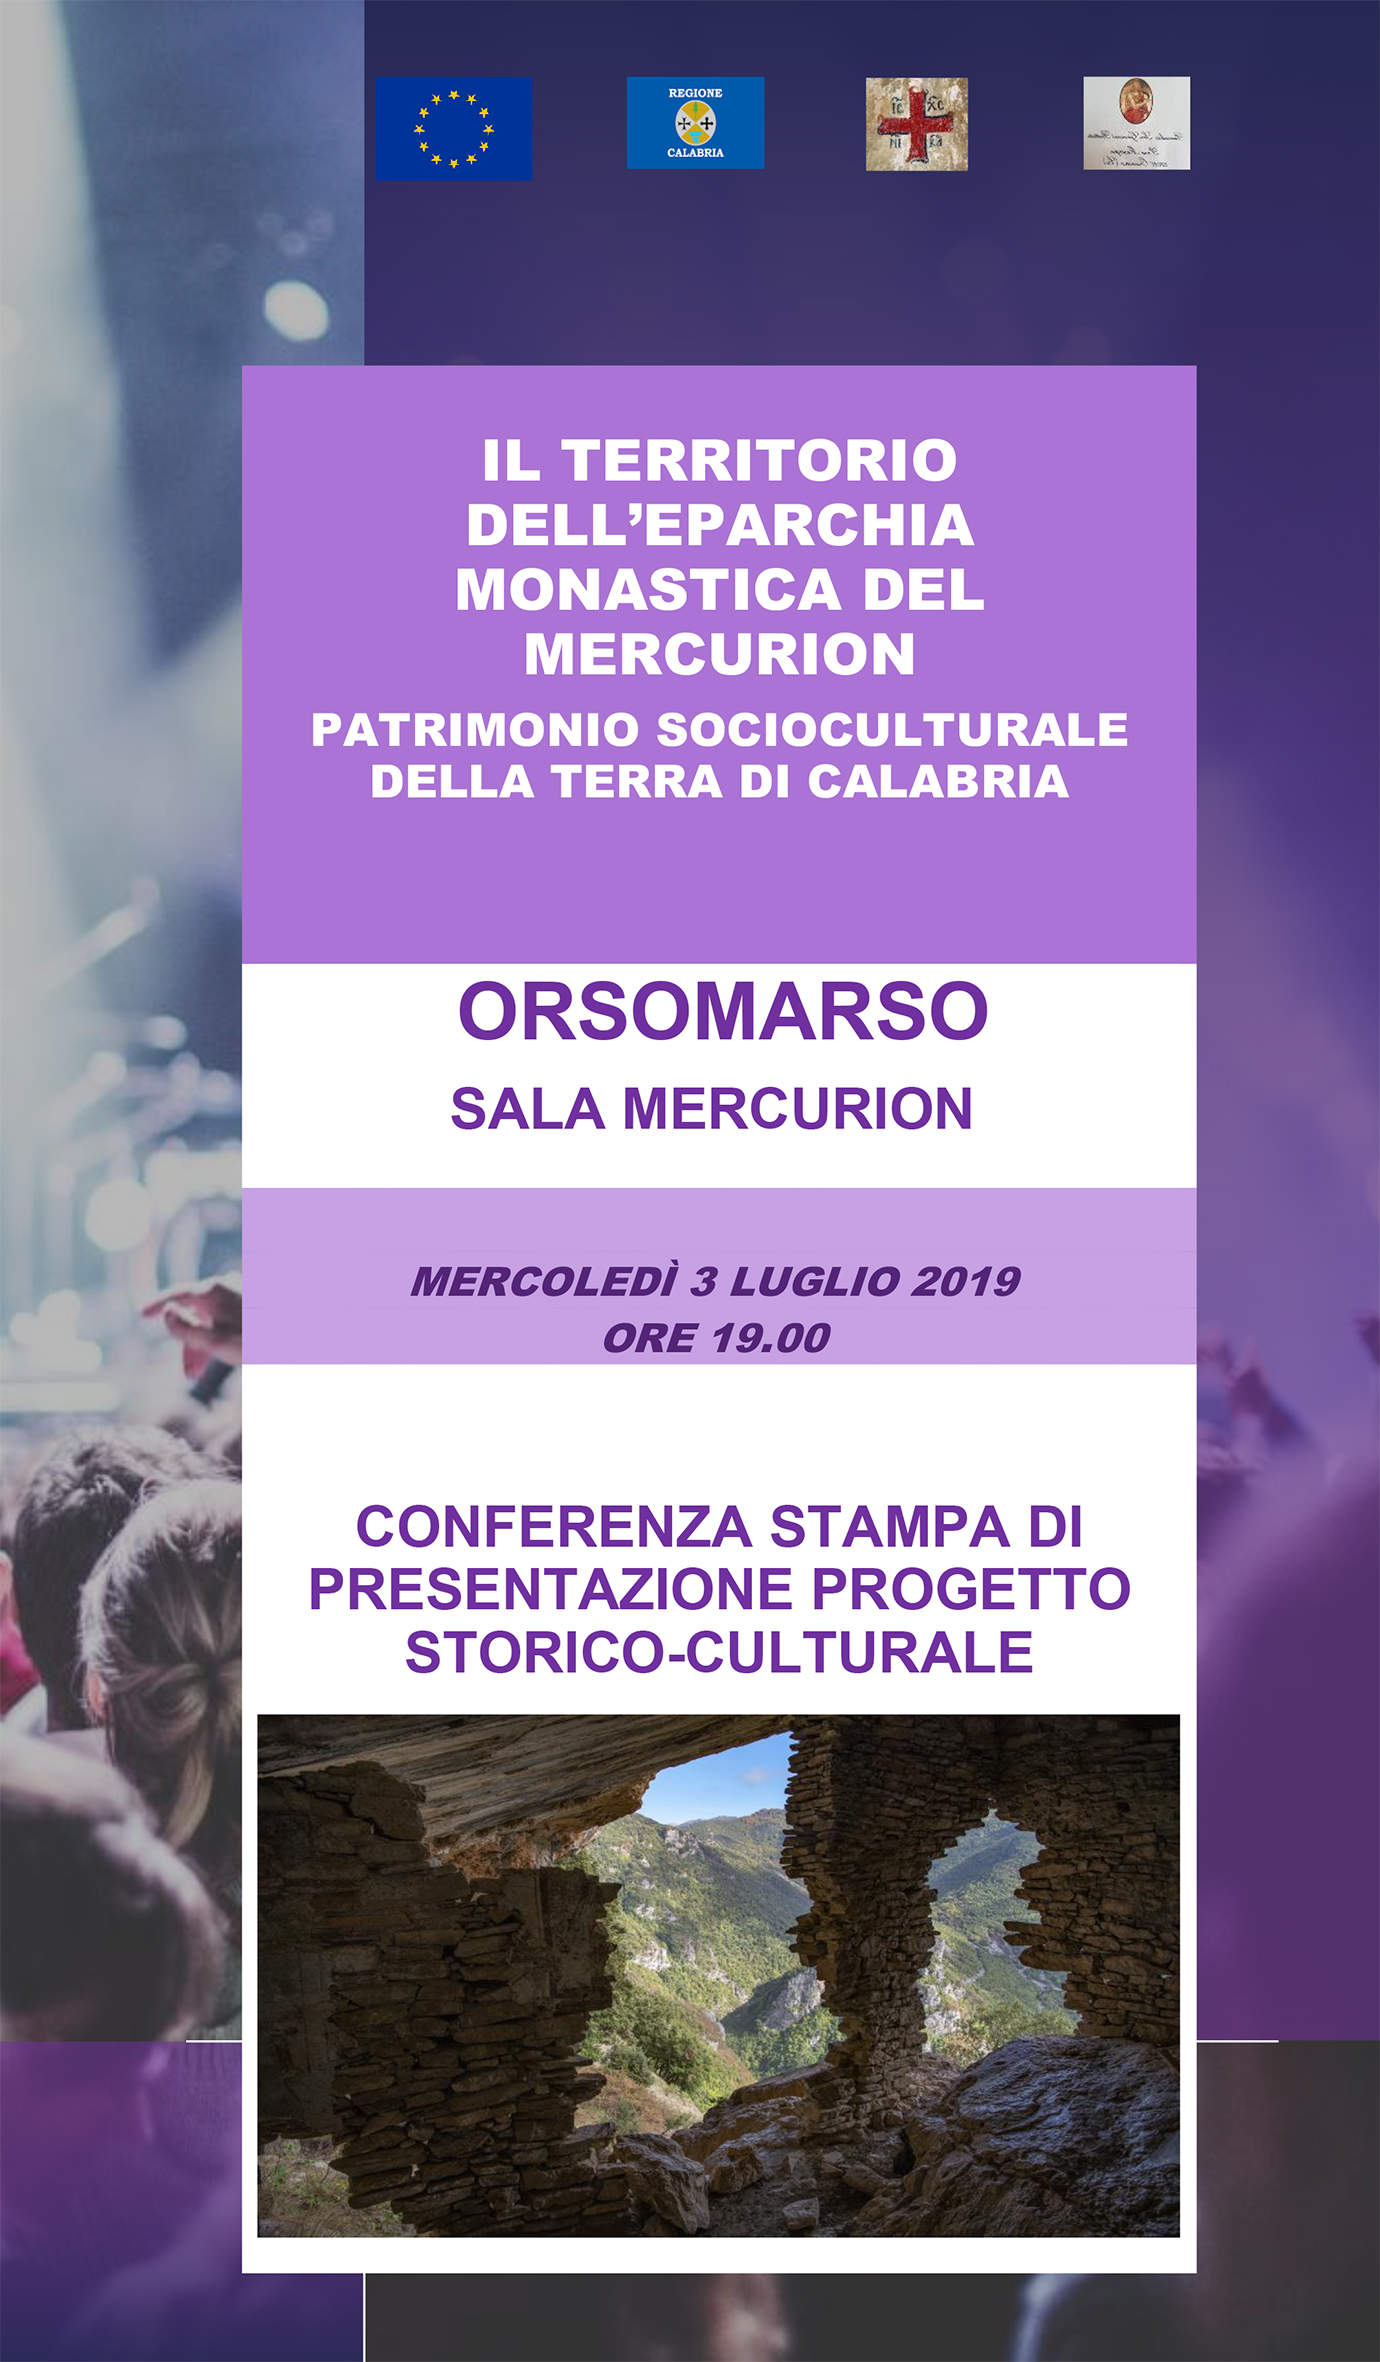 A Orsomarso parte un progetto di marketing territoriale per valorizzare il Mercurion, patrimonio socioculturale della Calabria